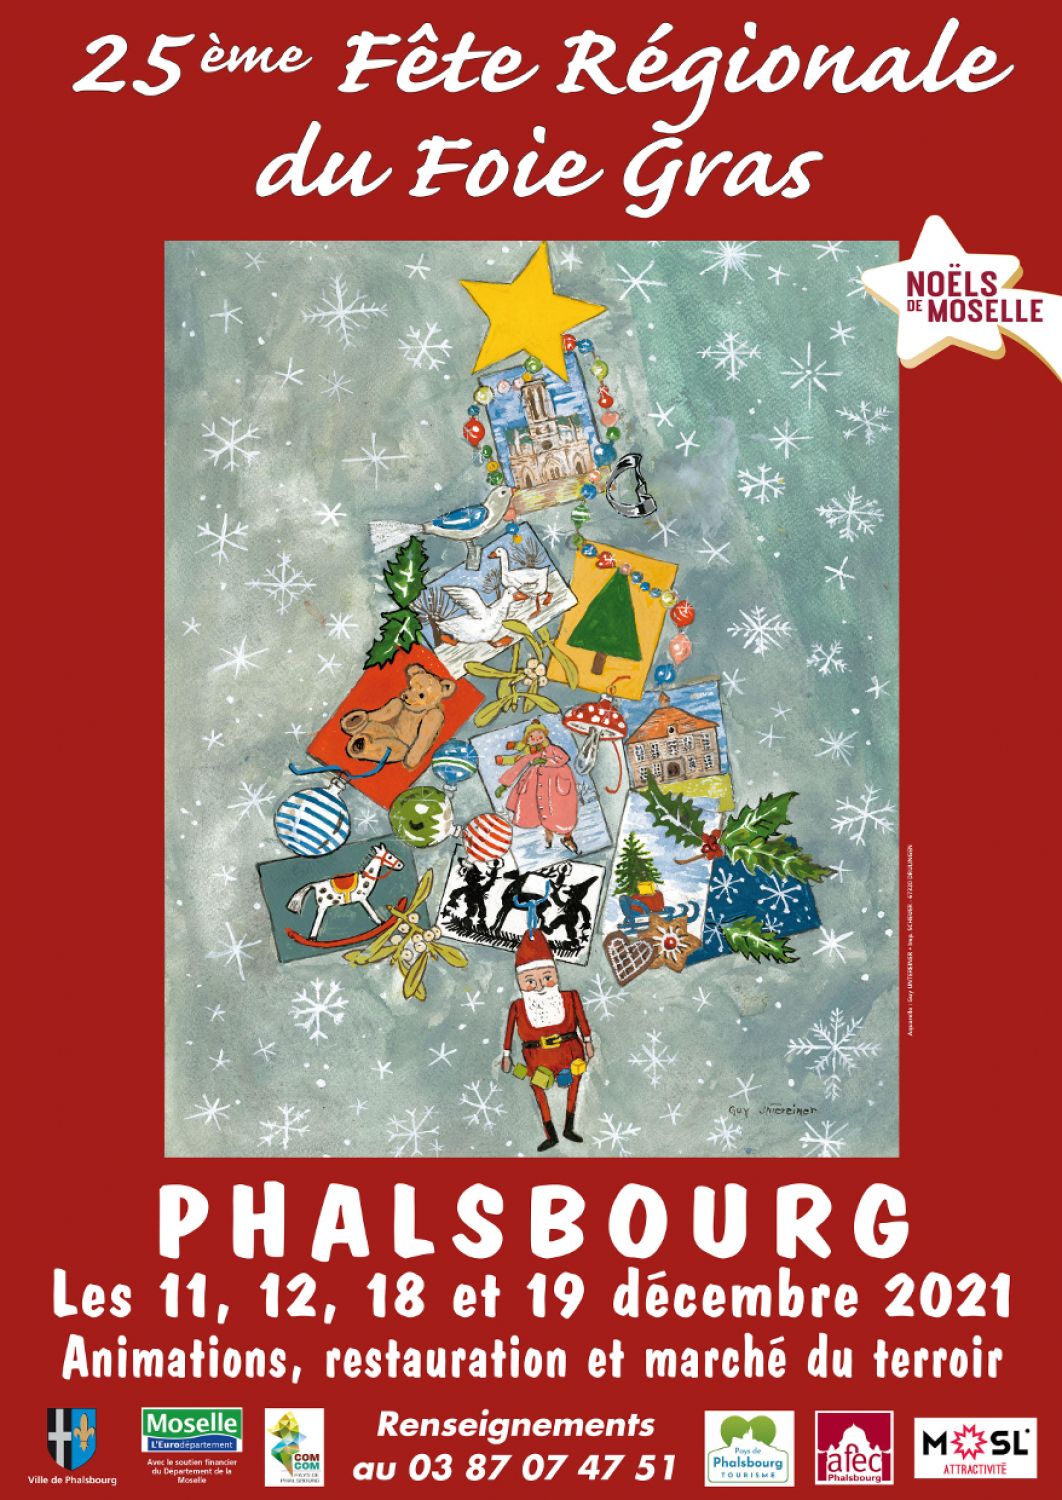 A Phalsbourg, la fête du foie gras c'est le rendez-vous du mois de décembre